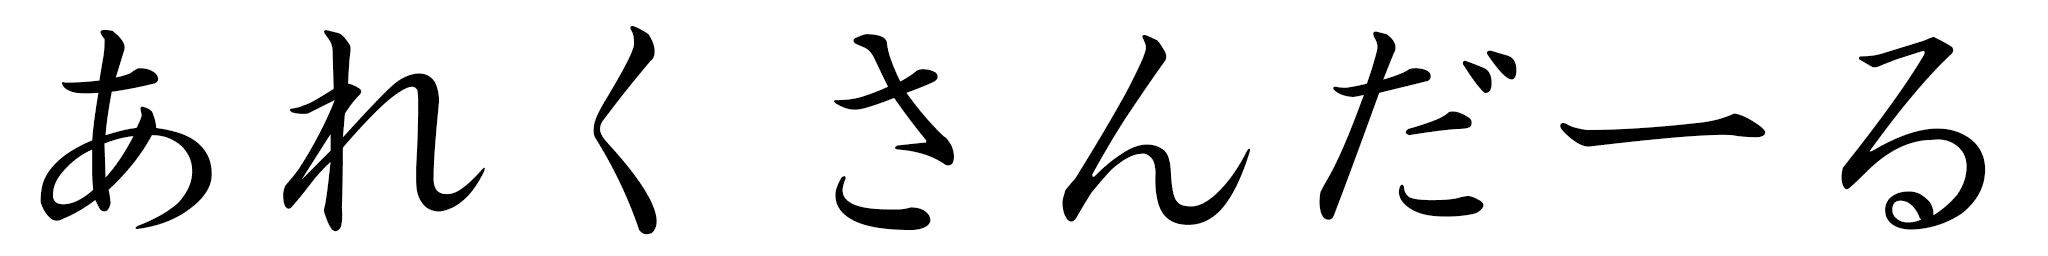 Aleksadar en japonais